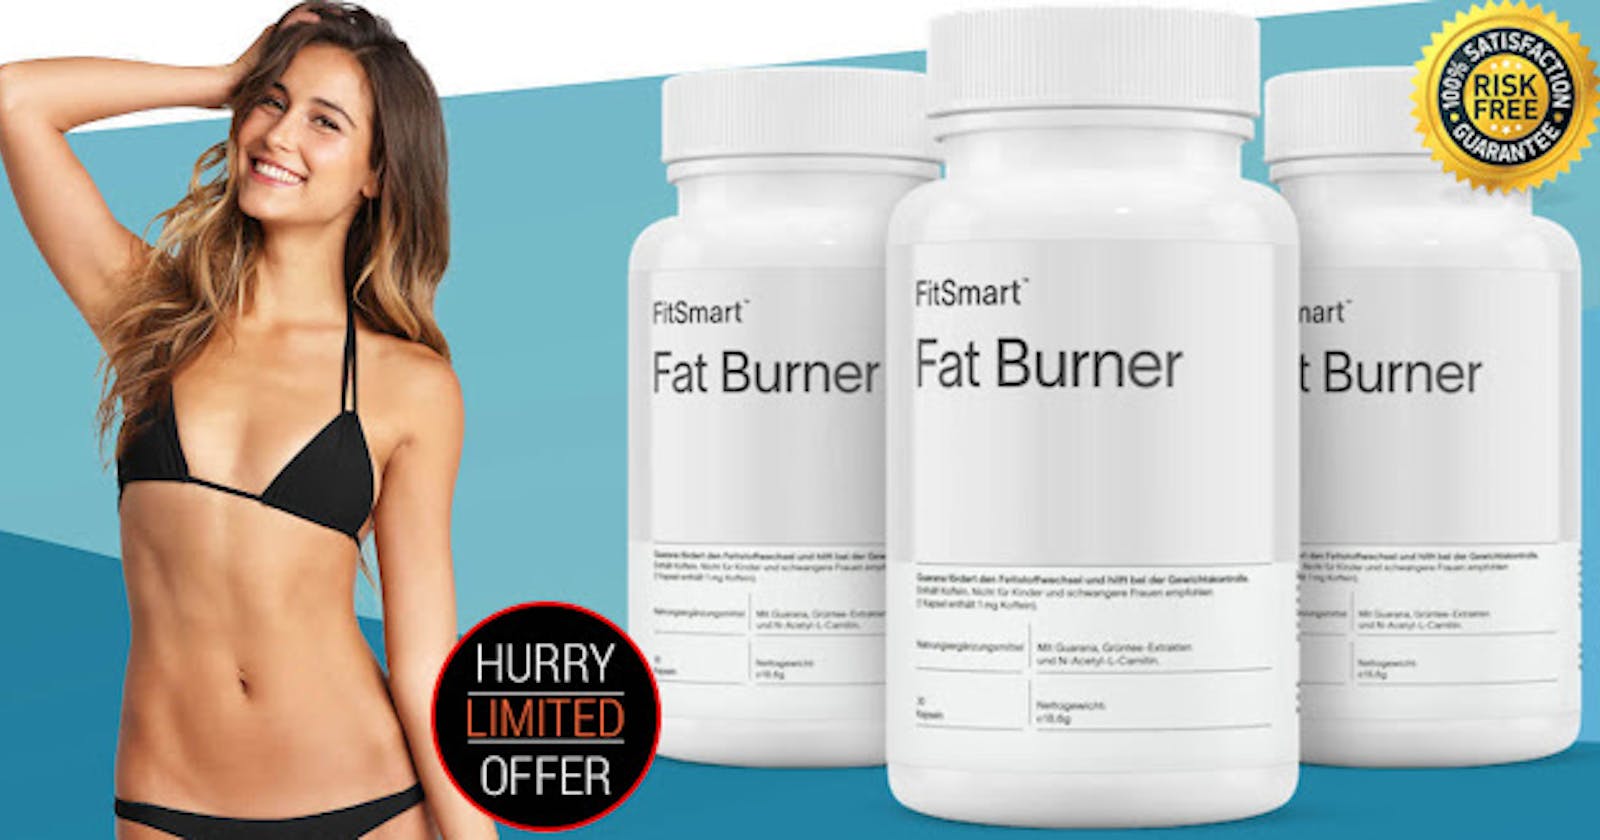 FitSmart Fat Burner France: obtenez de l'aide pour éliminer les graisses avec Keto !